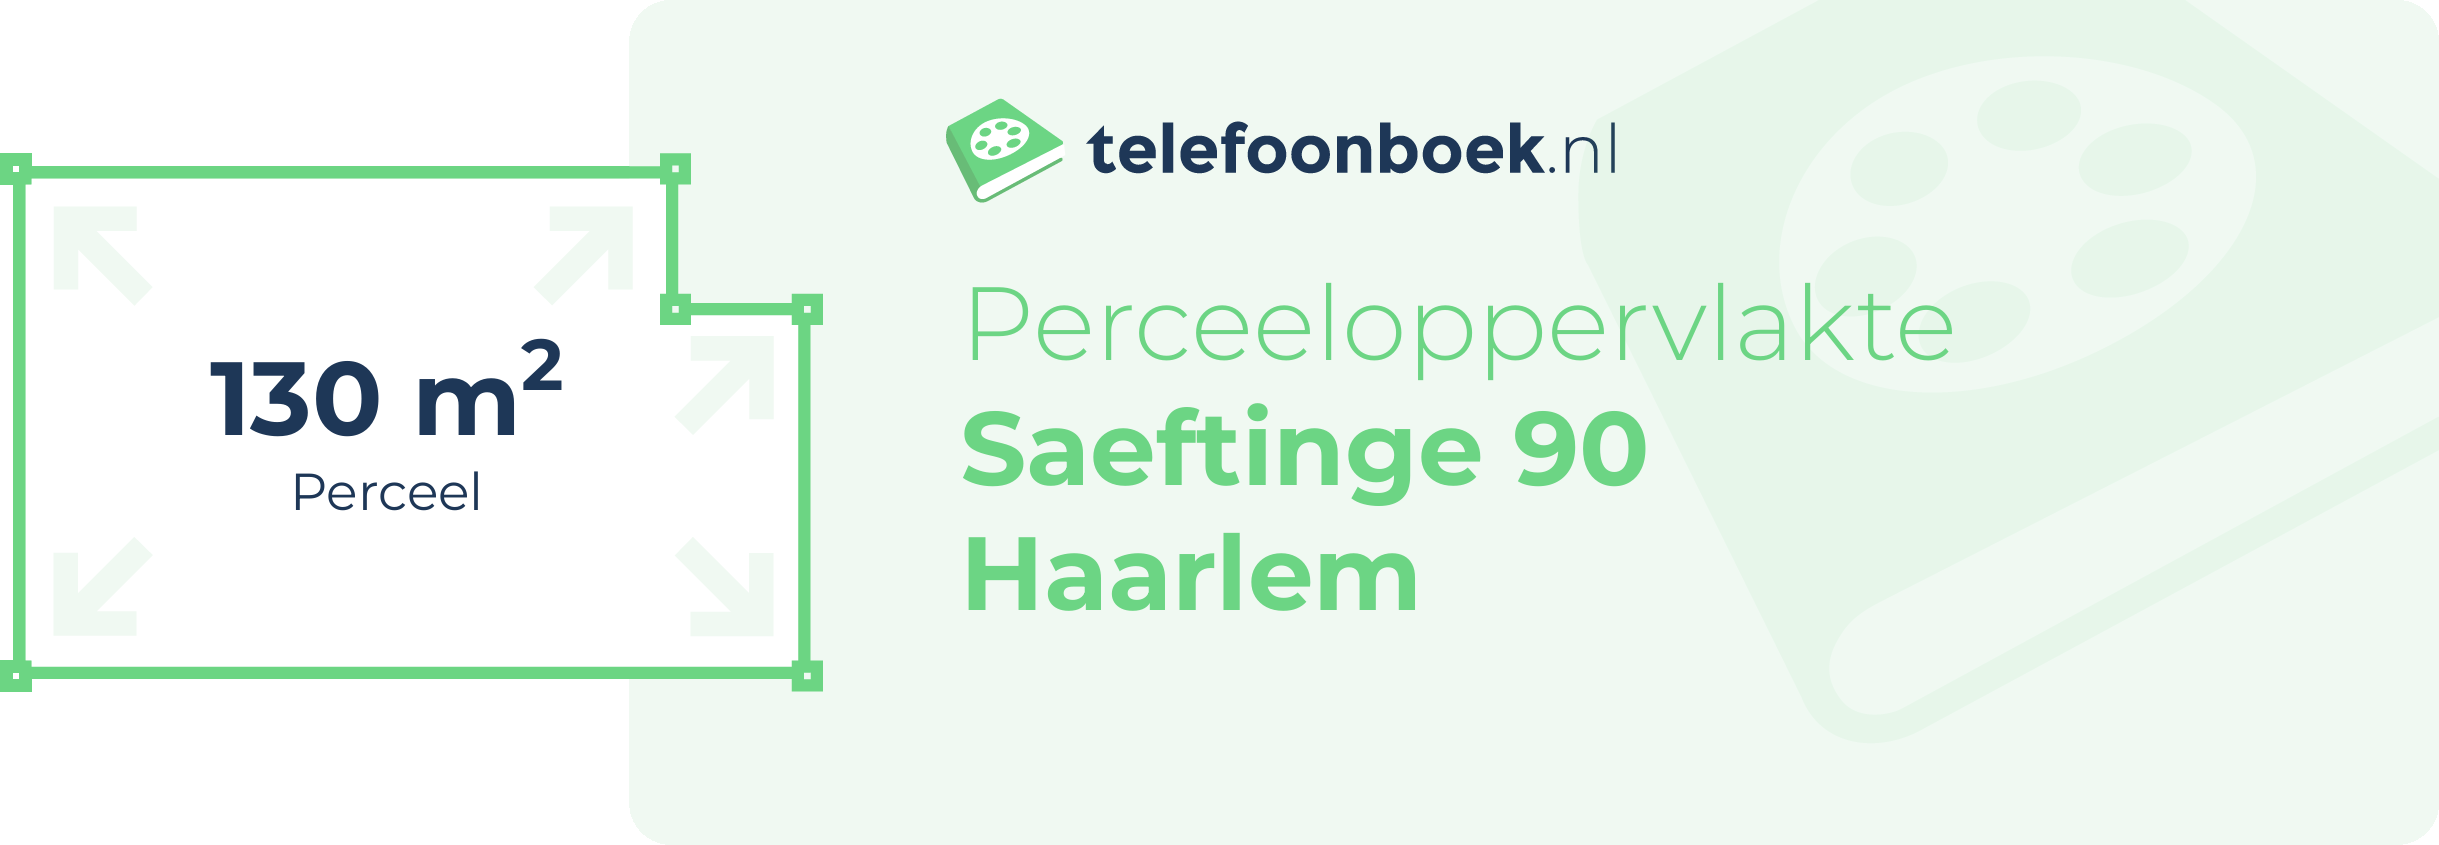 Perceeloppervlakte Saeftinge 90 Haarlem